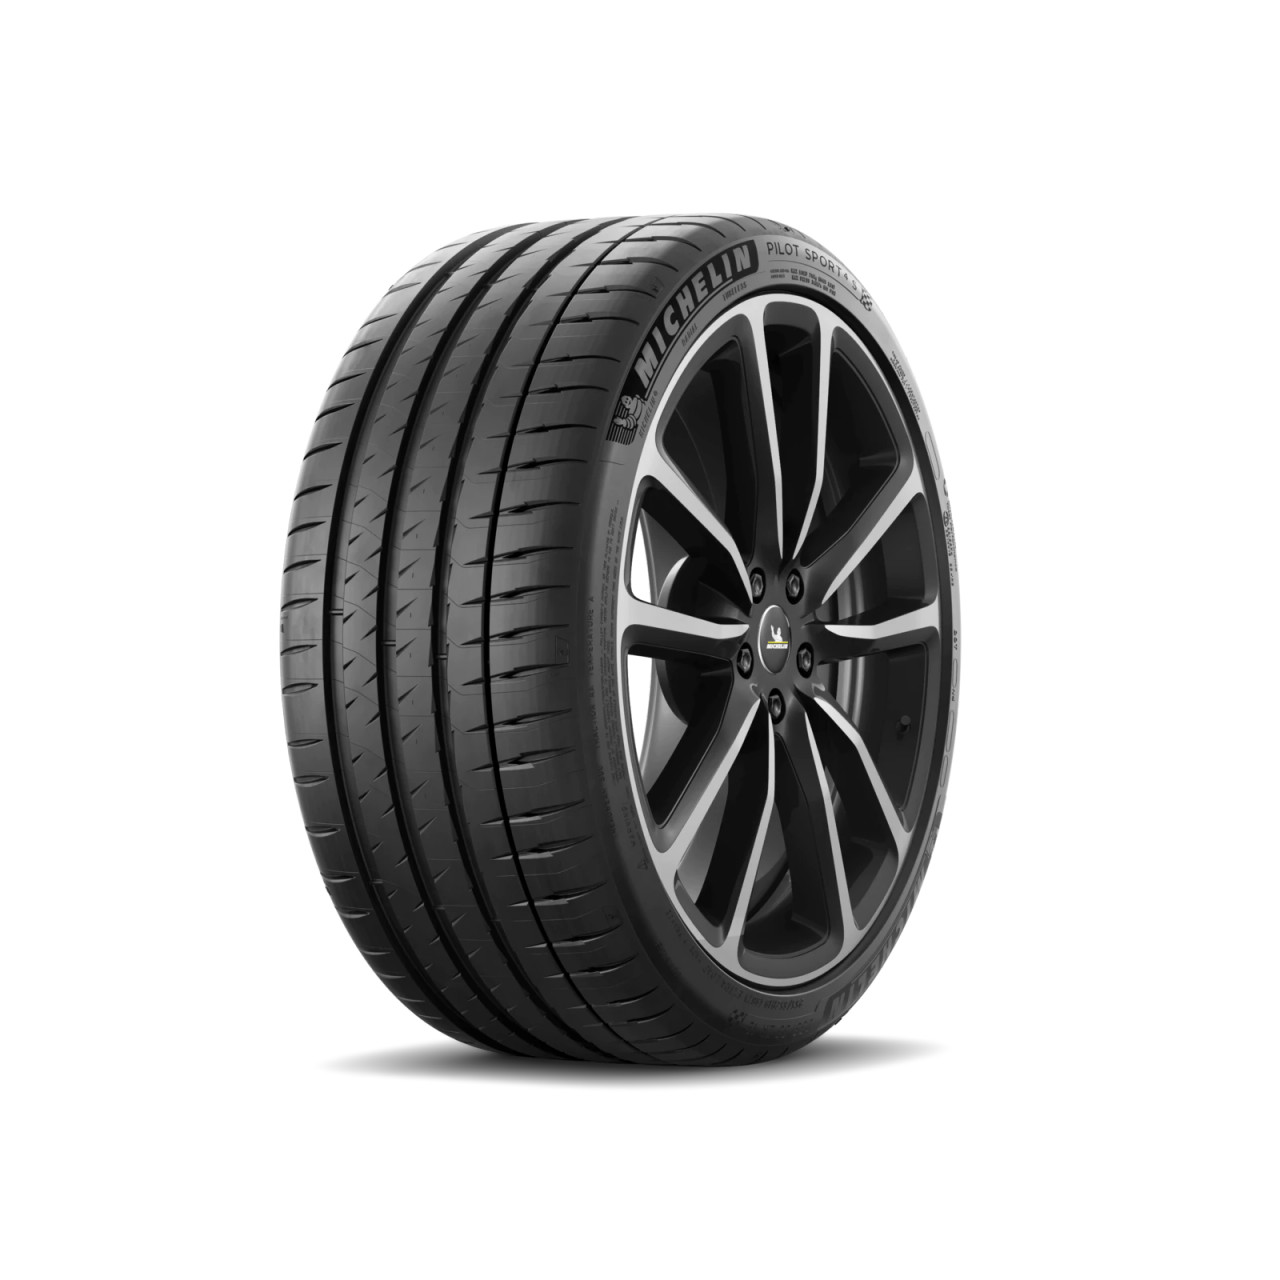 Michelin Pilot Sport 4S 295/25ZR19 (94Y) Tire